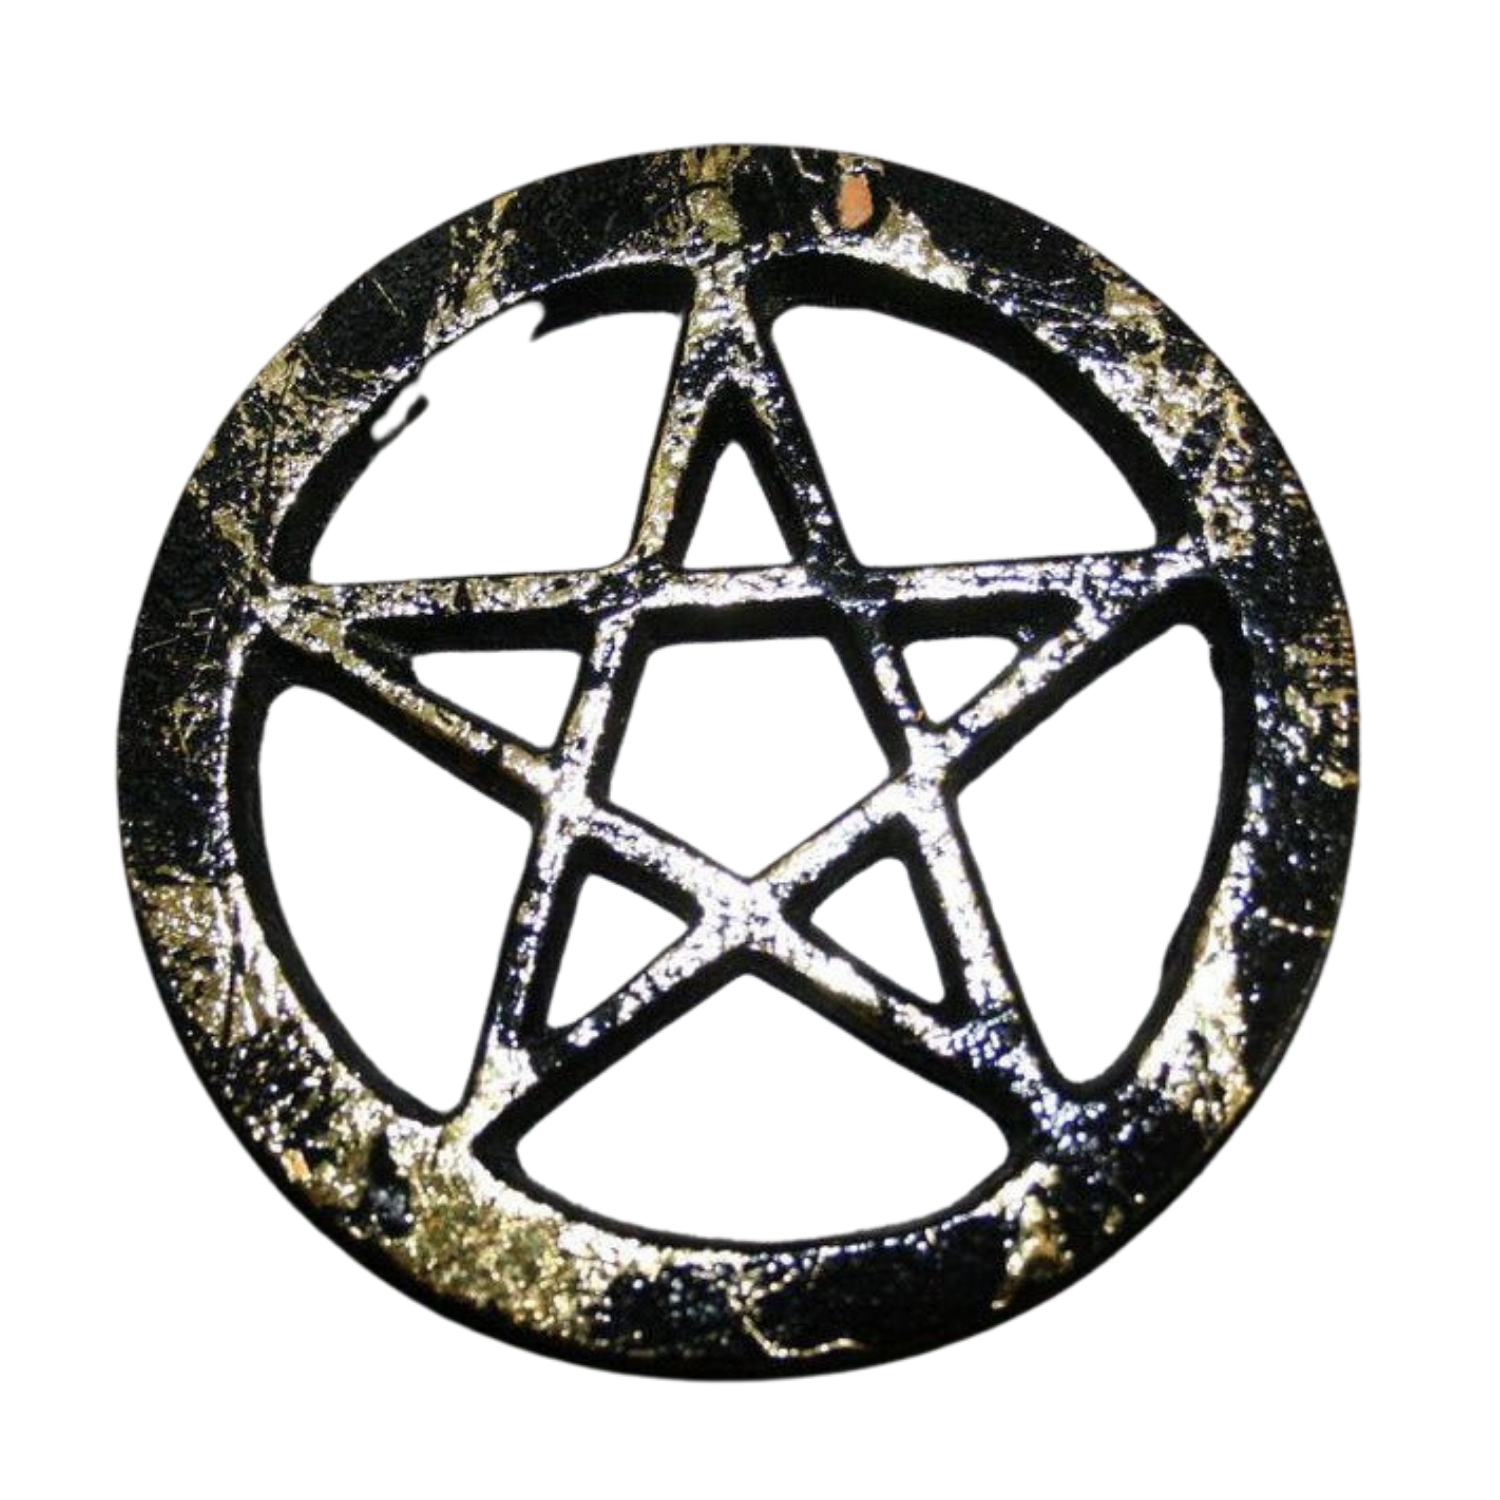 4" Pentagram Solid Brass Altar Tile Black with Gold